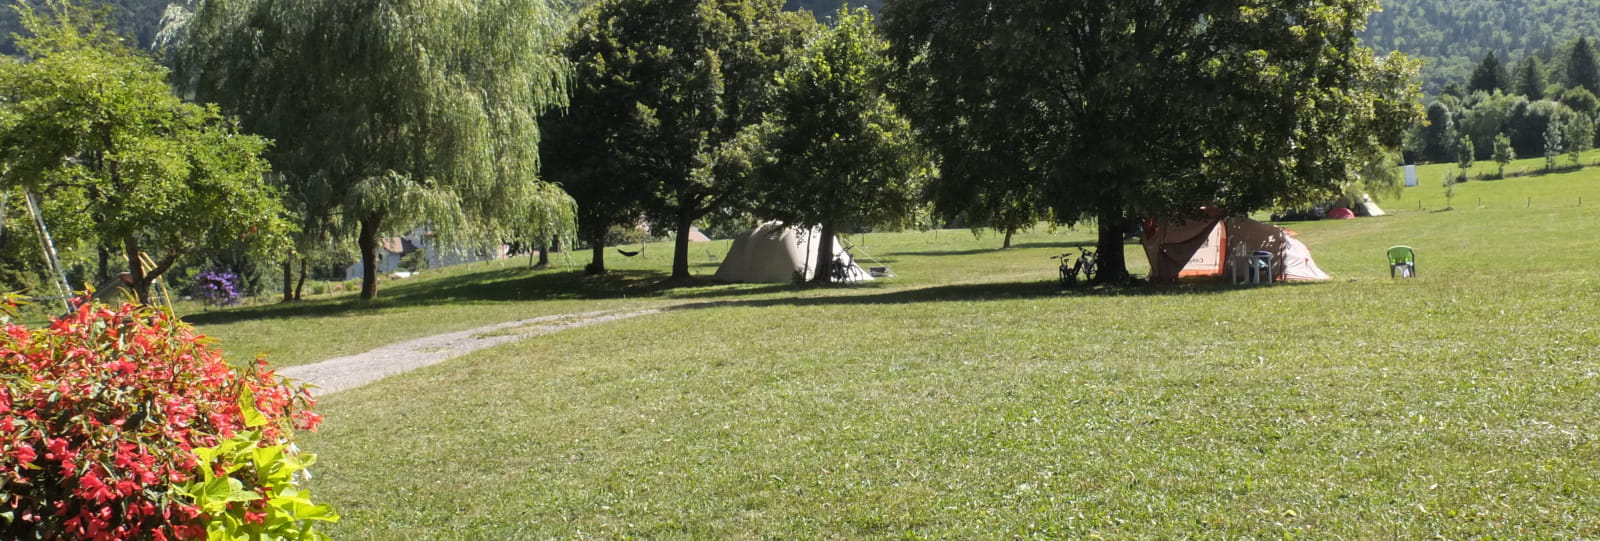 Aire Naturelle de Camping les Moreaux